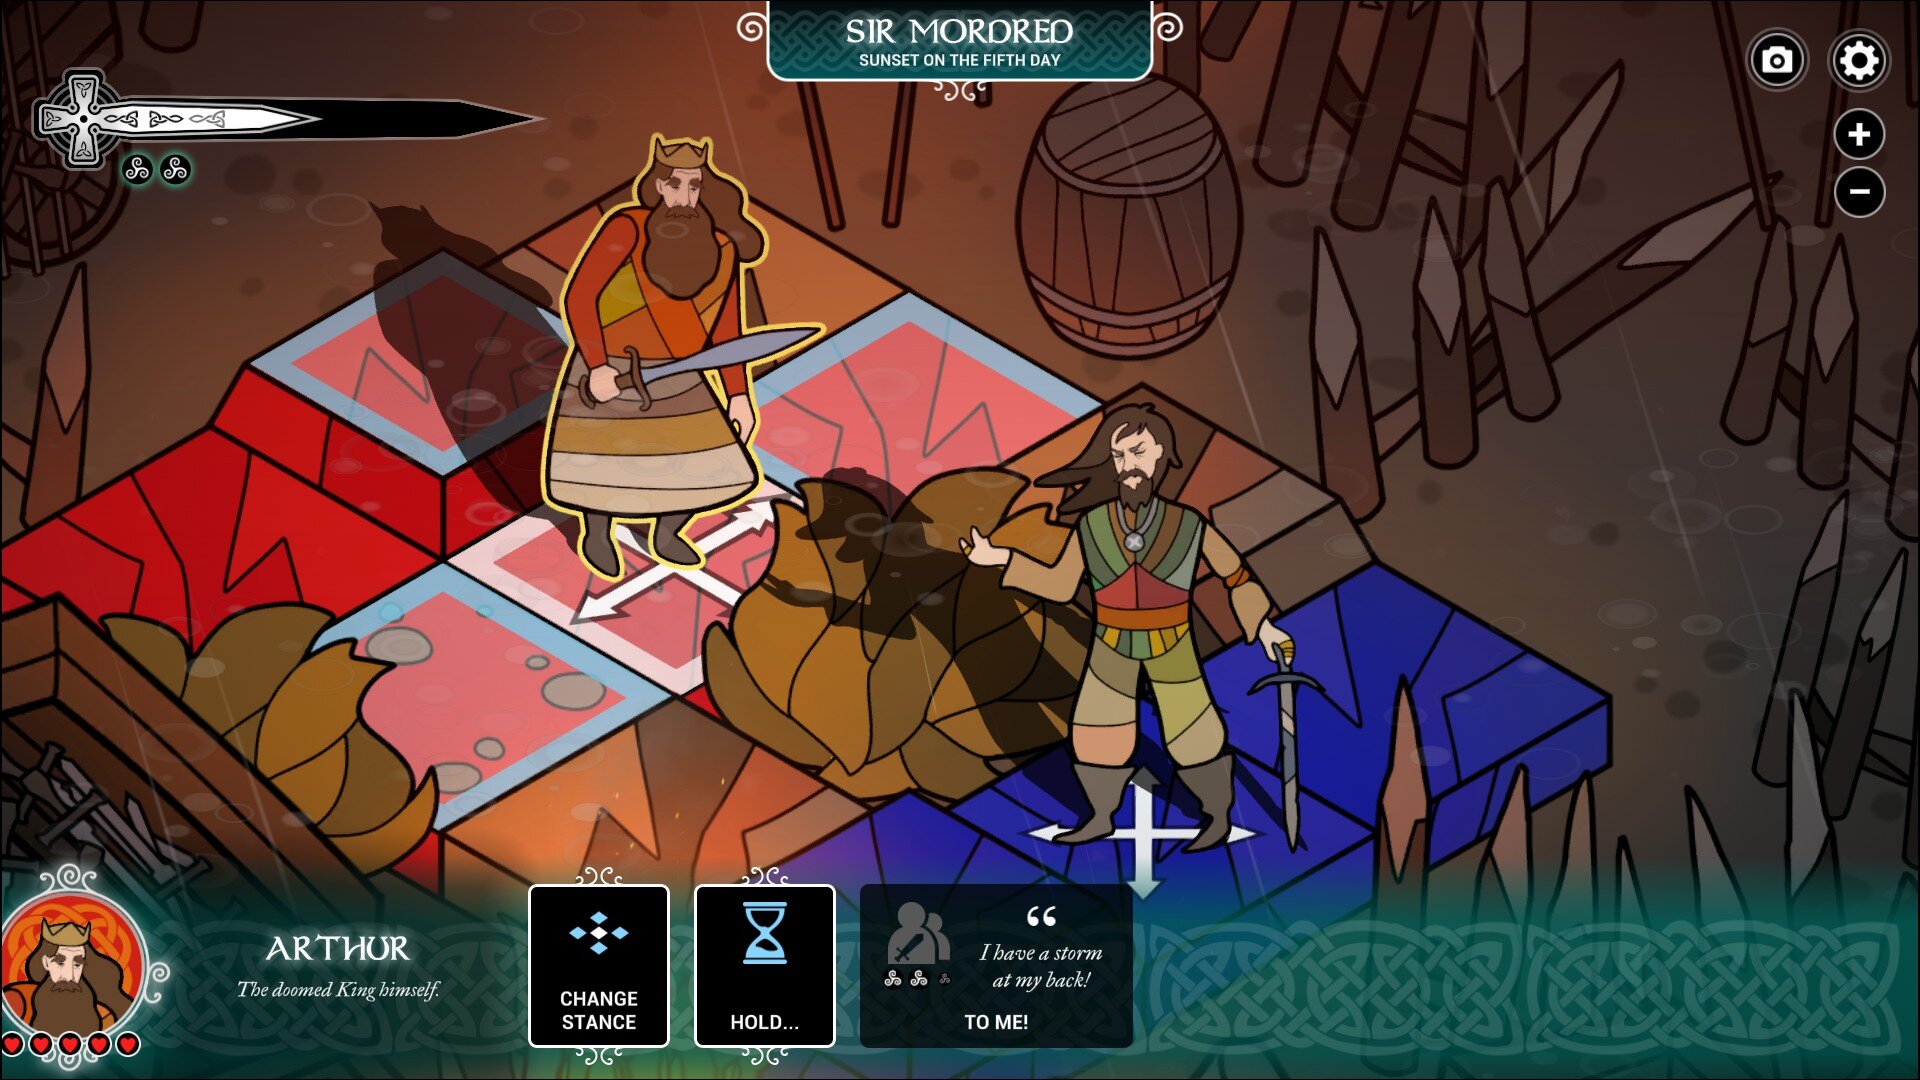 Pendragon game screenshot, Arthur and Mordred